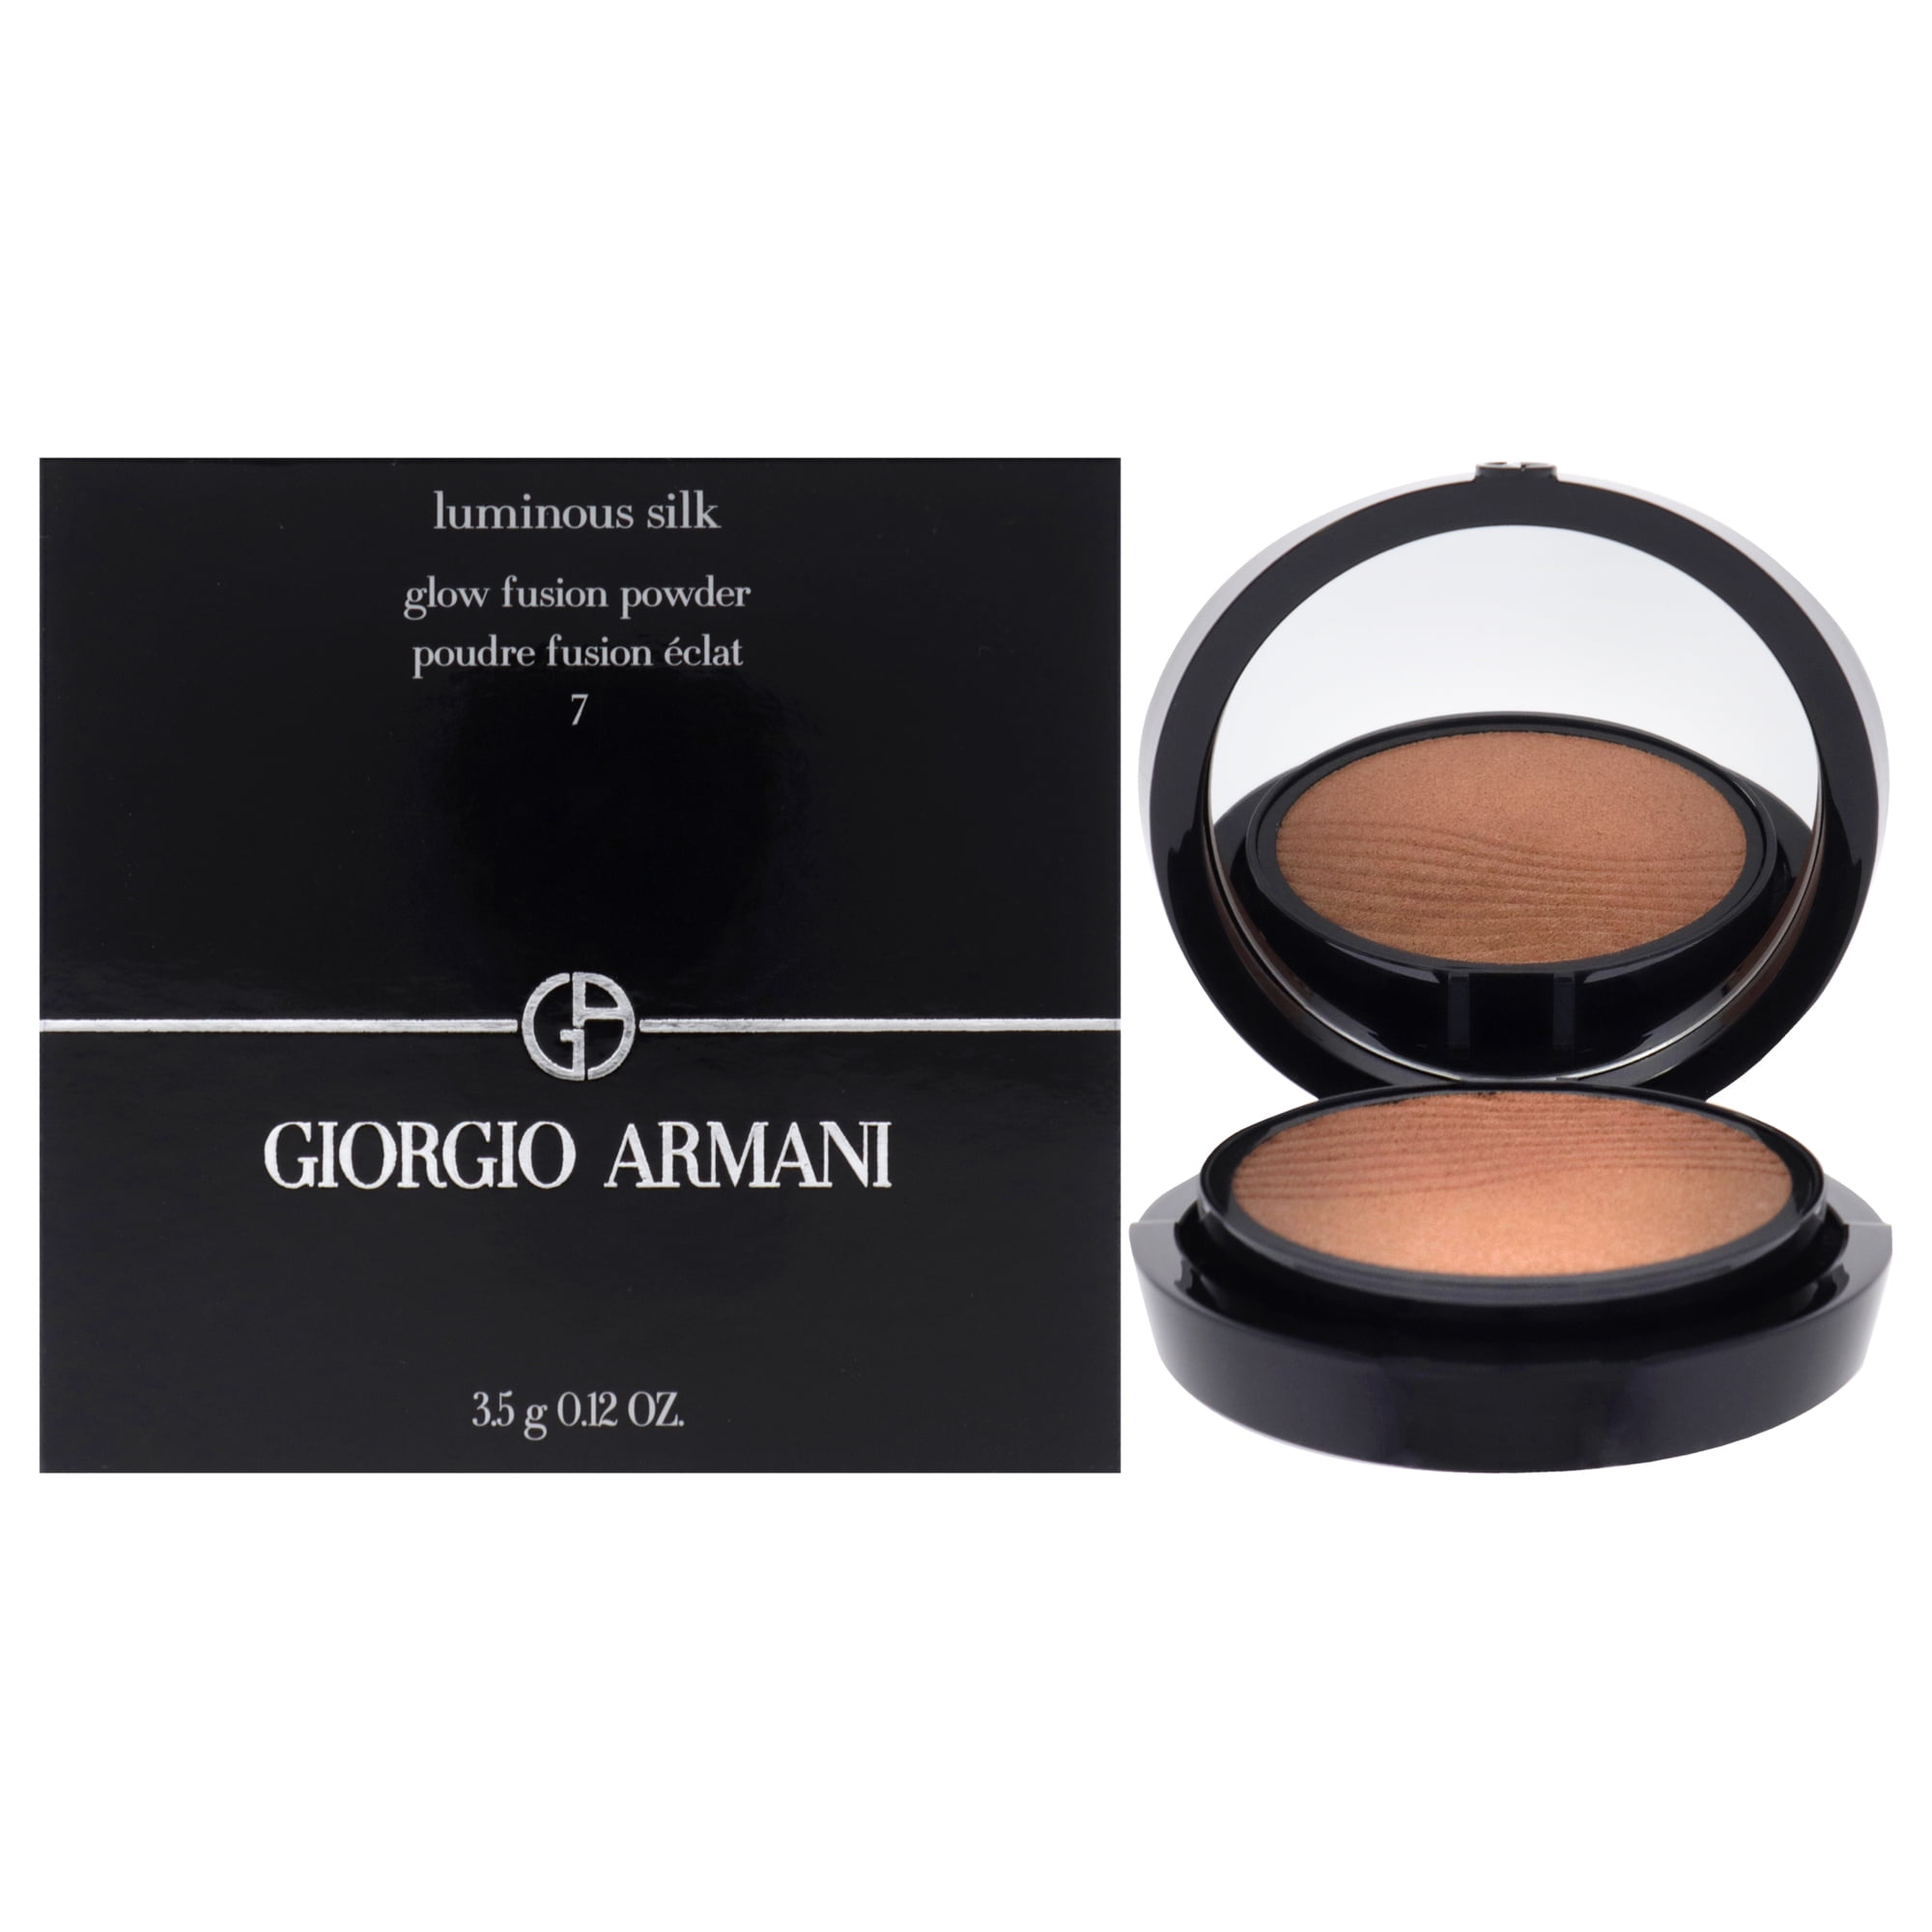 Giorgio Armani Luminous Silk Glow Fusion Powder - 7 , 0.12 oz Concealer -